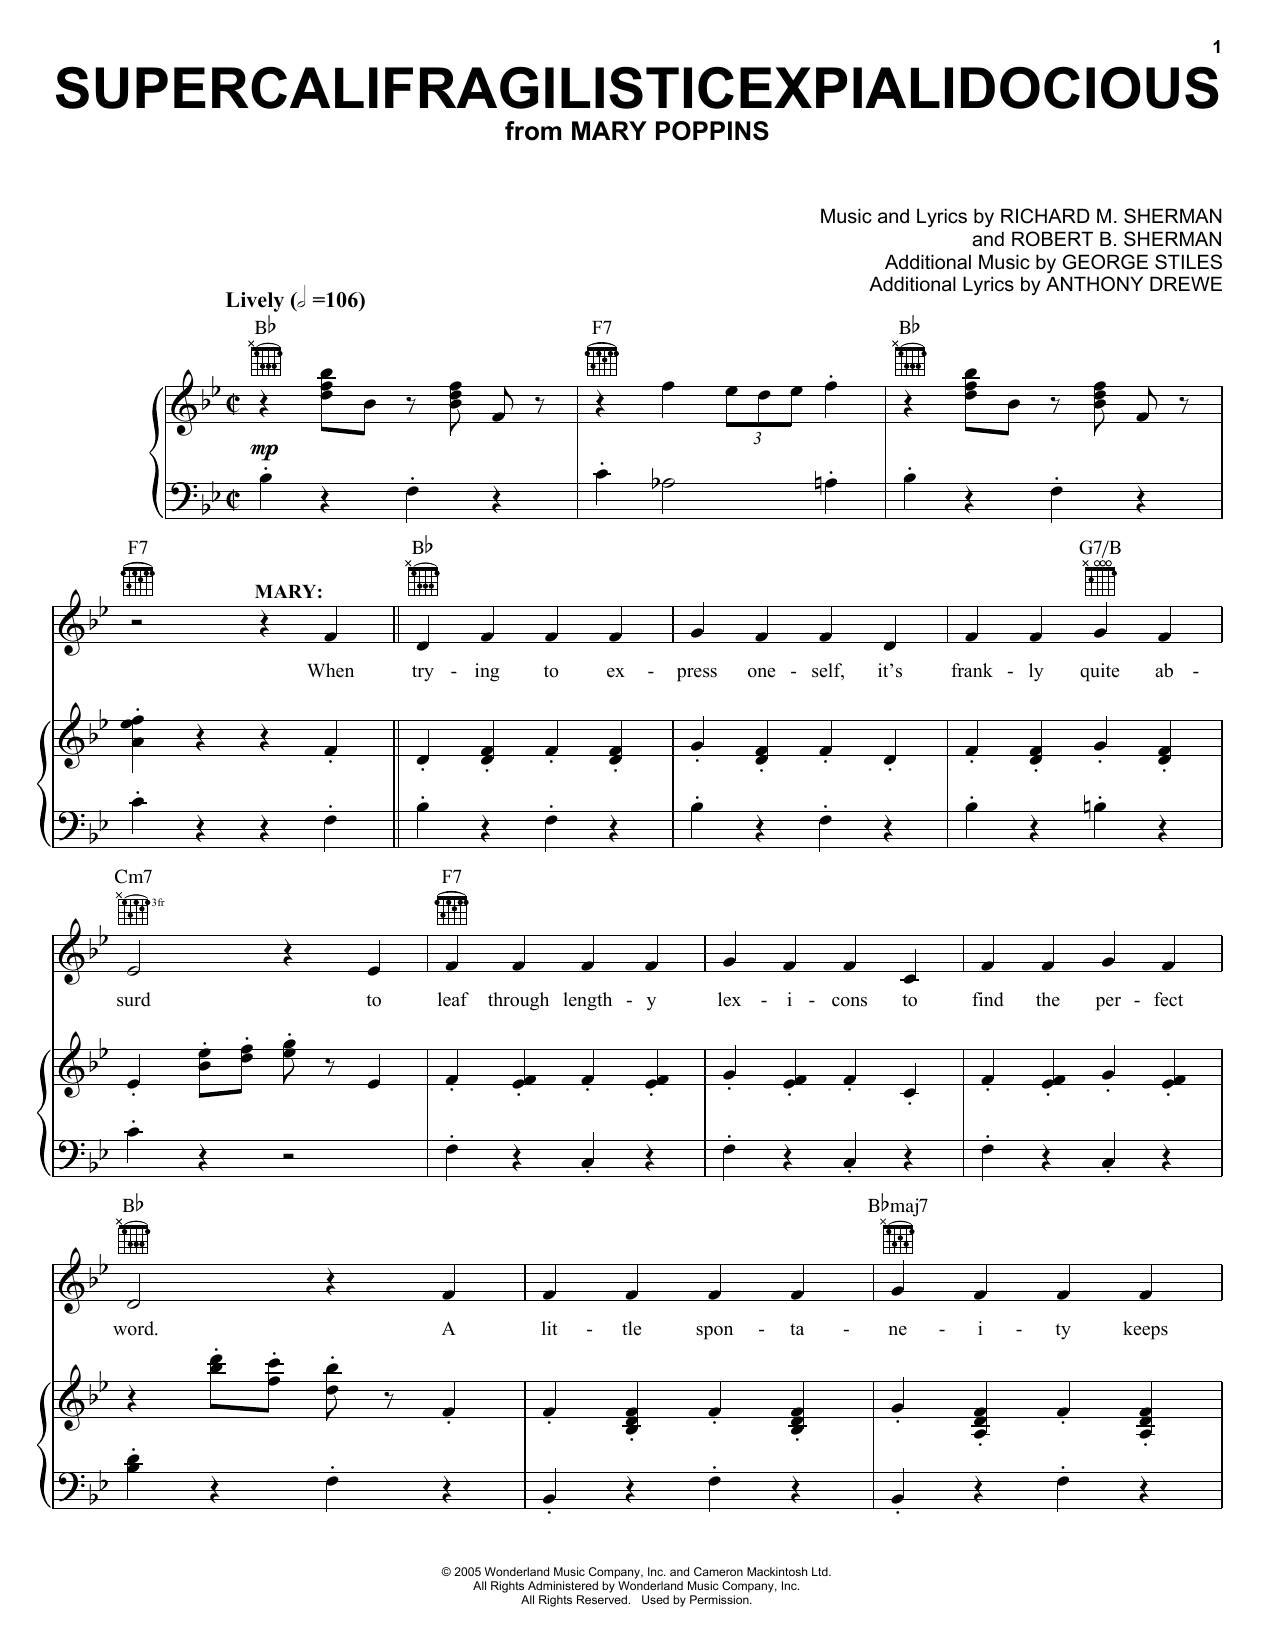 Sherman Brothers Supercalifragilisticexpialidocious (from Mary Poppins) sheet music notes and chords arranged for Ukulele Chords/Lyrics